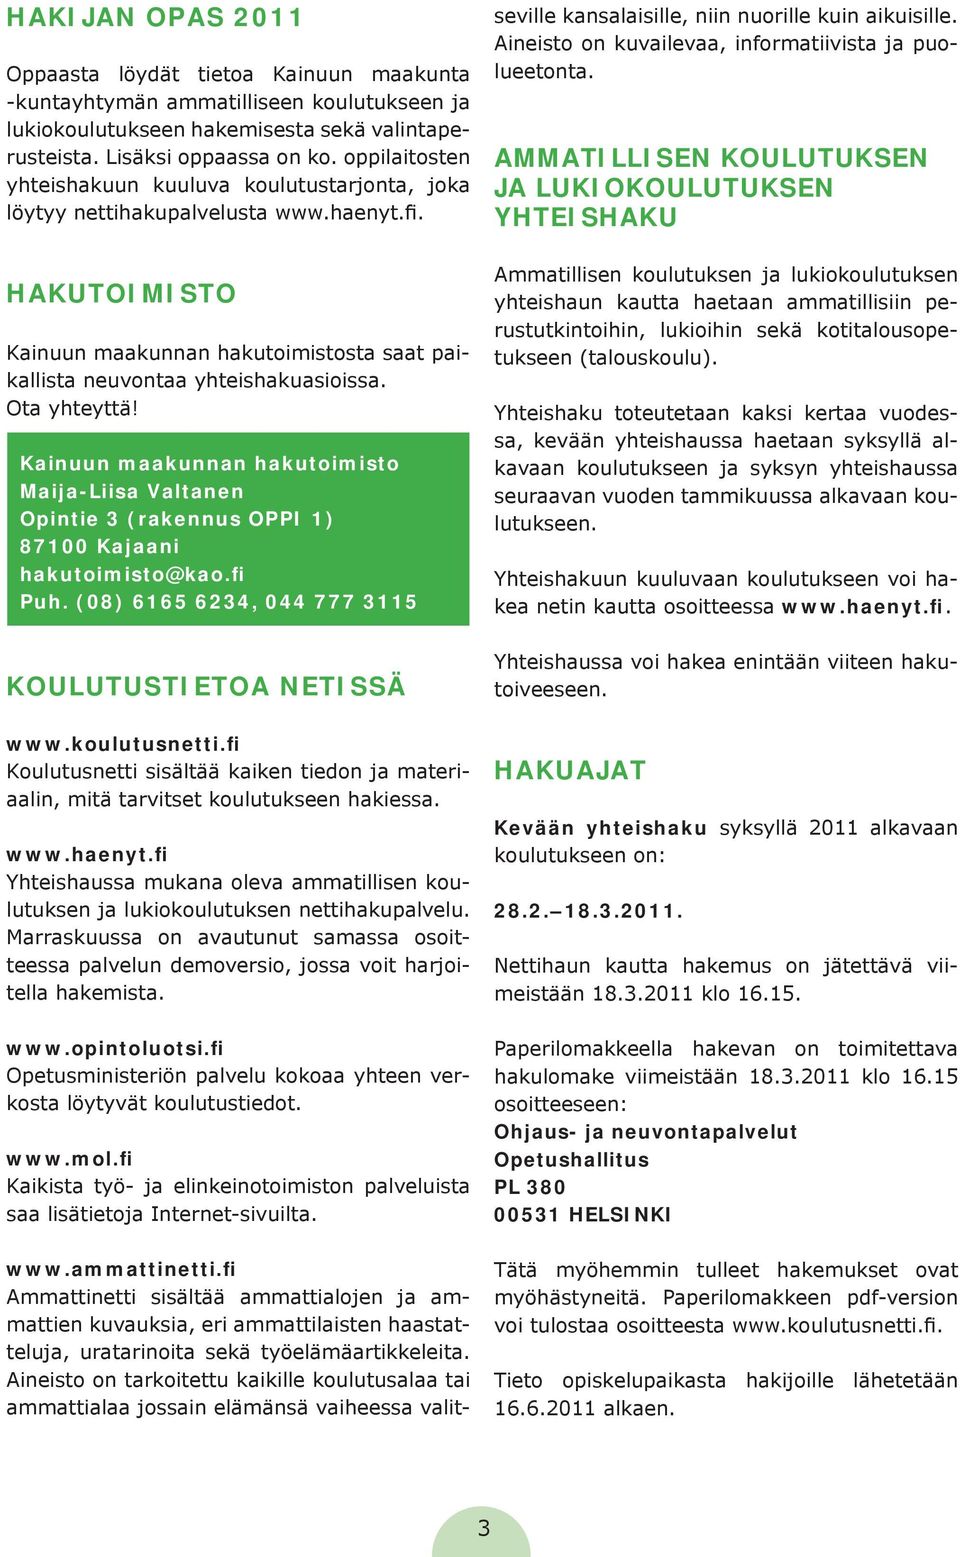 Ota yhteyttä! Kainuun maakunnan hakutoimisto Maija-Liisa Valtanen Opintie 3 (rakennus OPPI 1) 87100 Kajaani hakutoimisto@kao.fi Puh. (08) 6165 6234, 044 777 3115 KOULUTUSTIETOA NETISSÄ www.